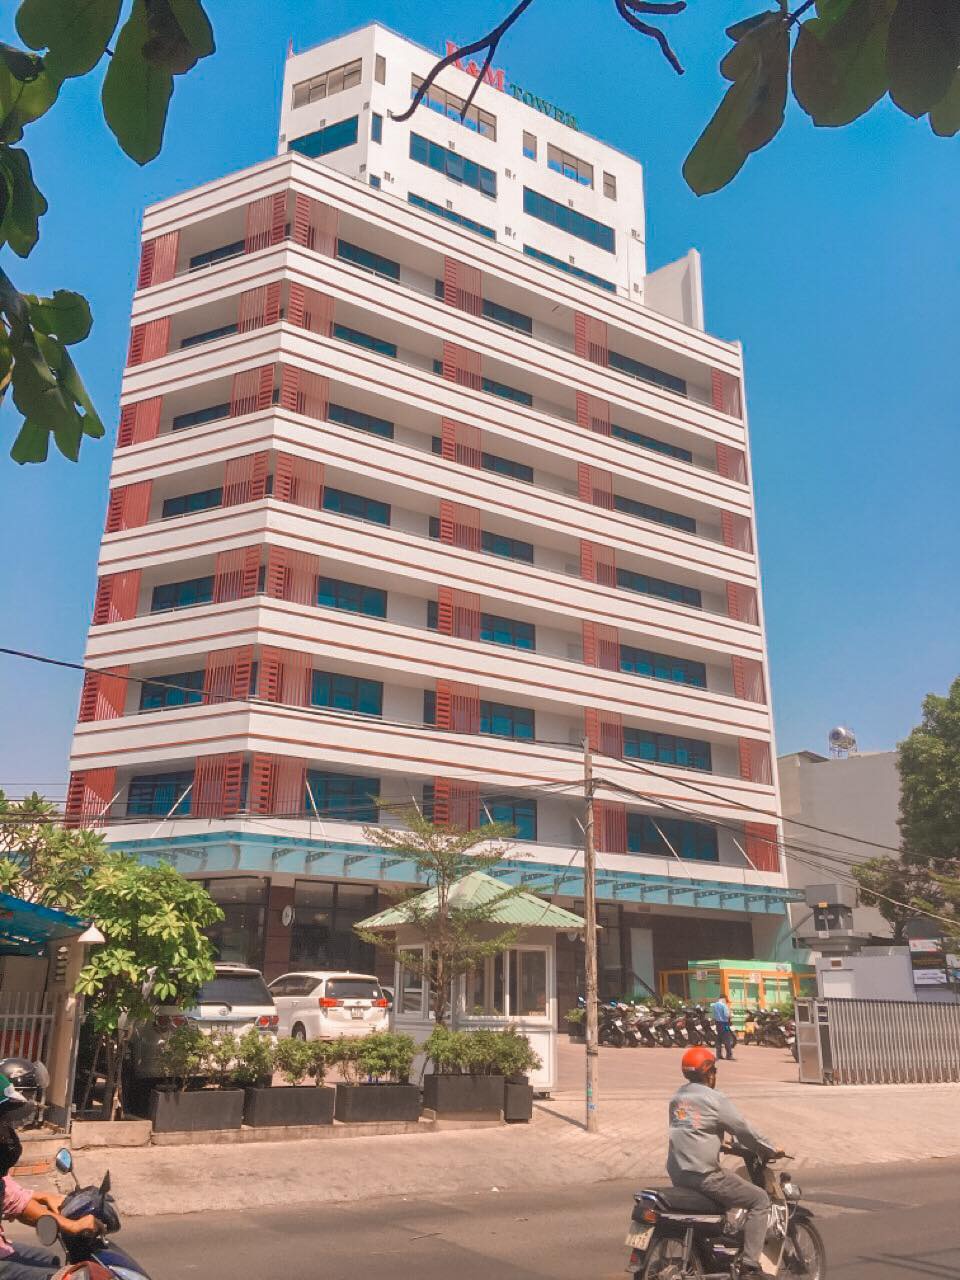 Tòa nhà MT ngay Nguyễn Văn Cừ - 15x22m, hầm 8 tầng, HĐ thuê 500 triệu/th - giá 150 tỷ (chính chủ)